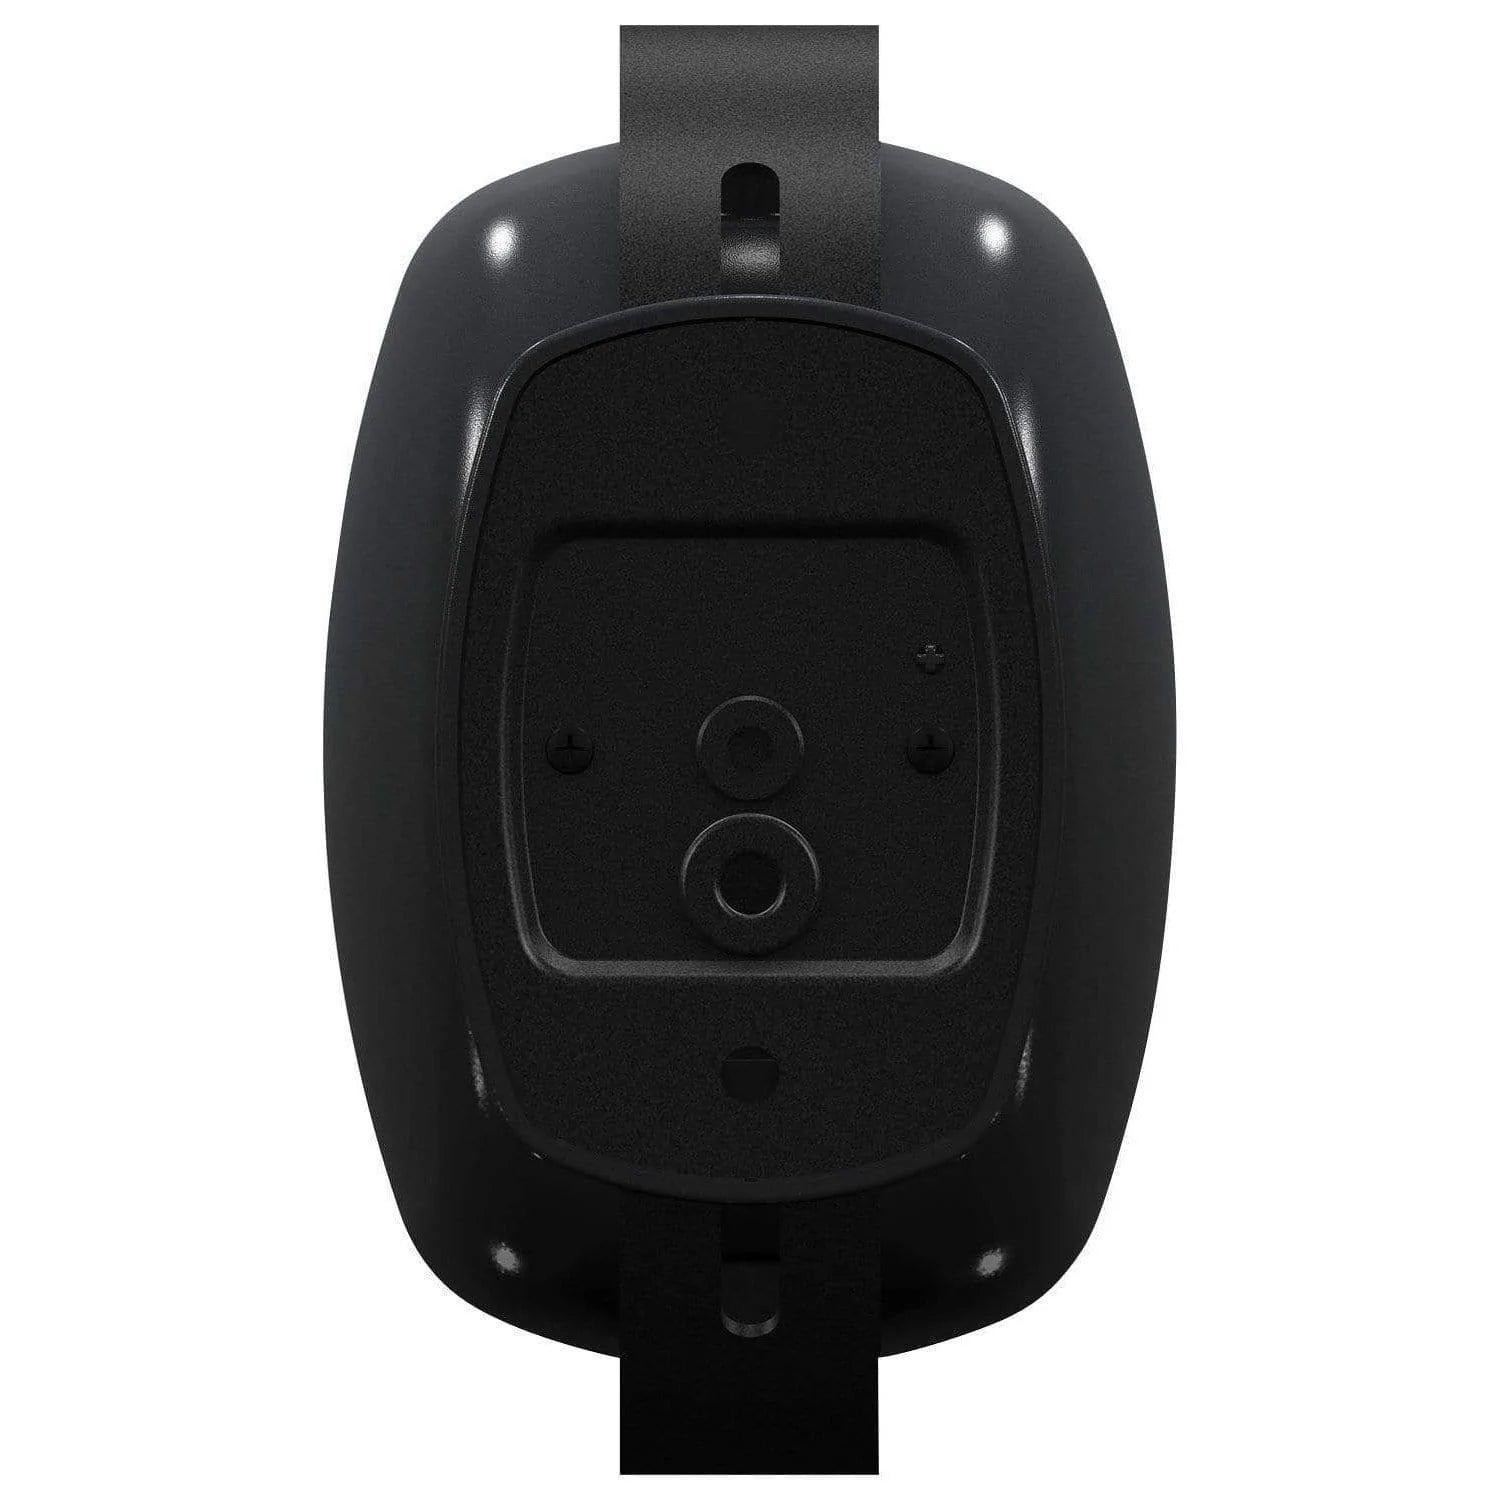 Behringer Eurocom SL4210BK Speaker System - (Black/White)